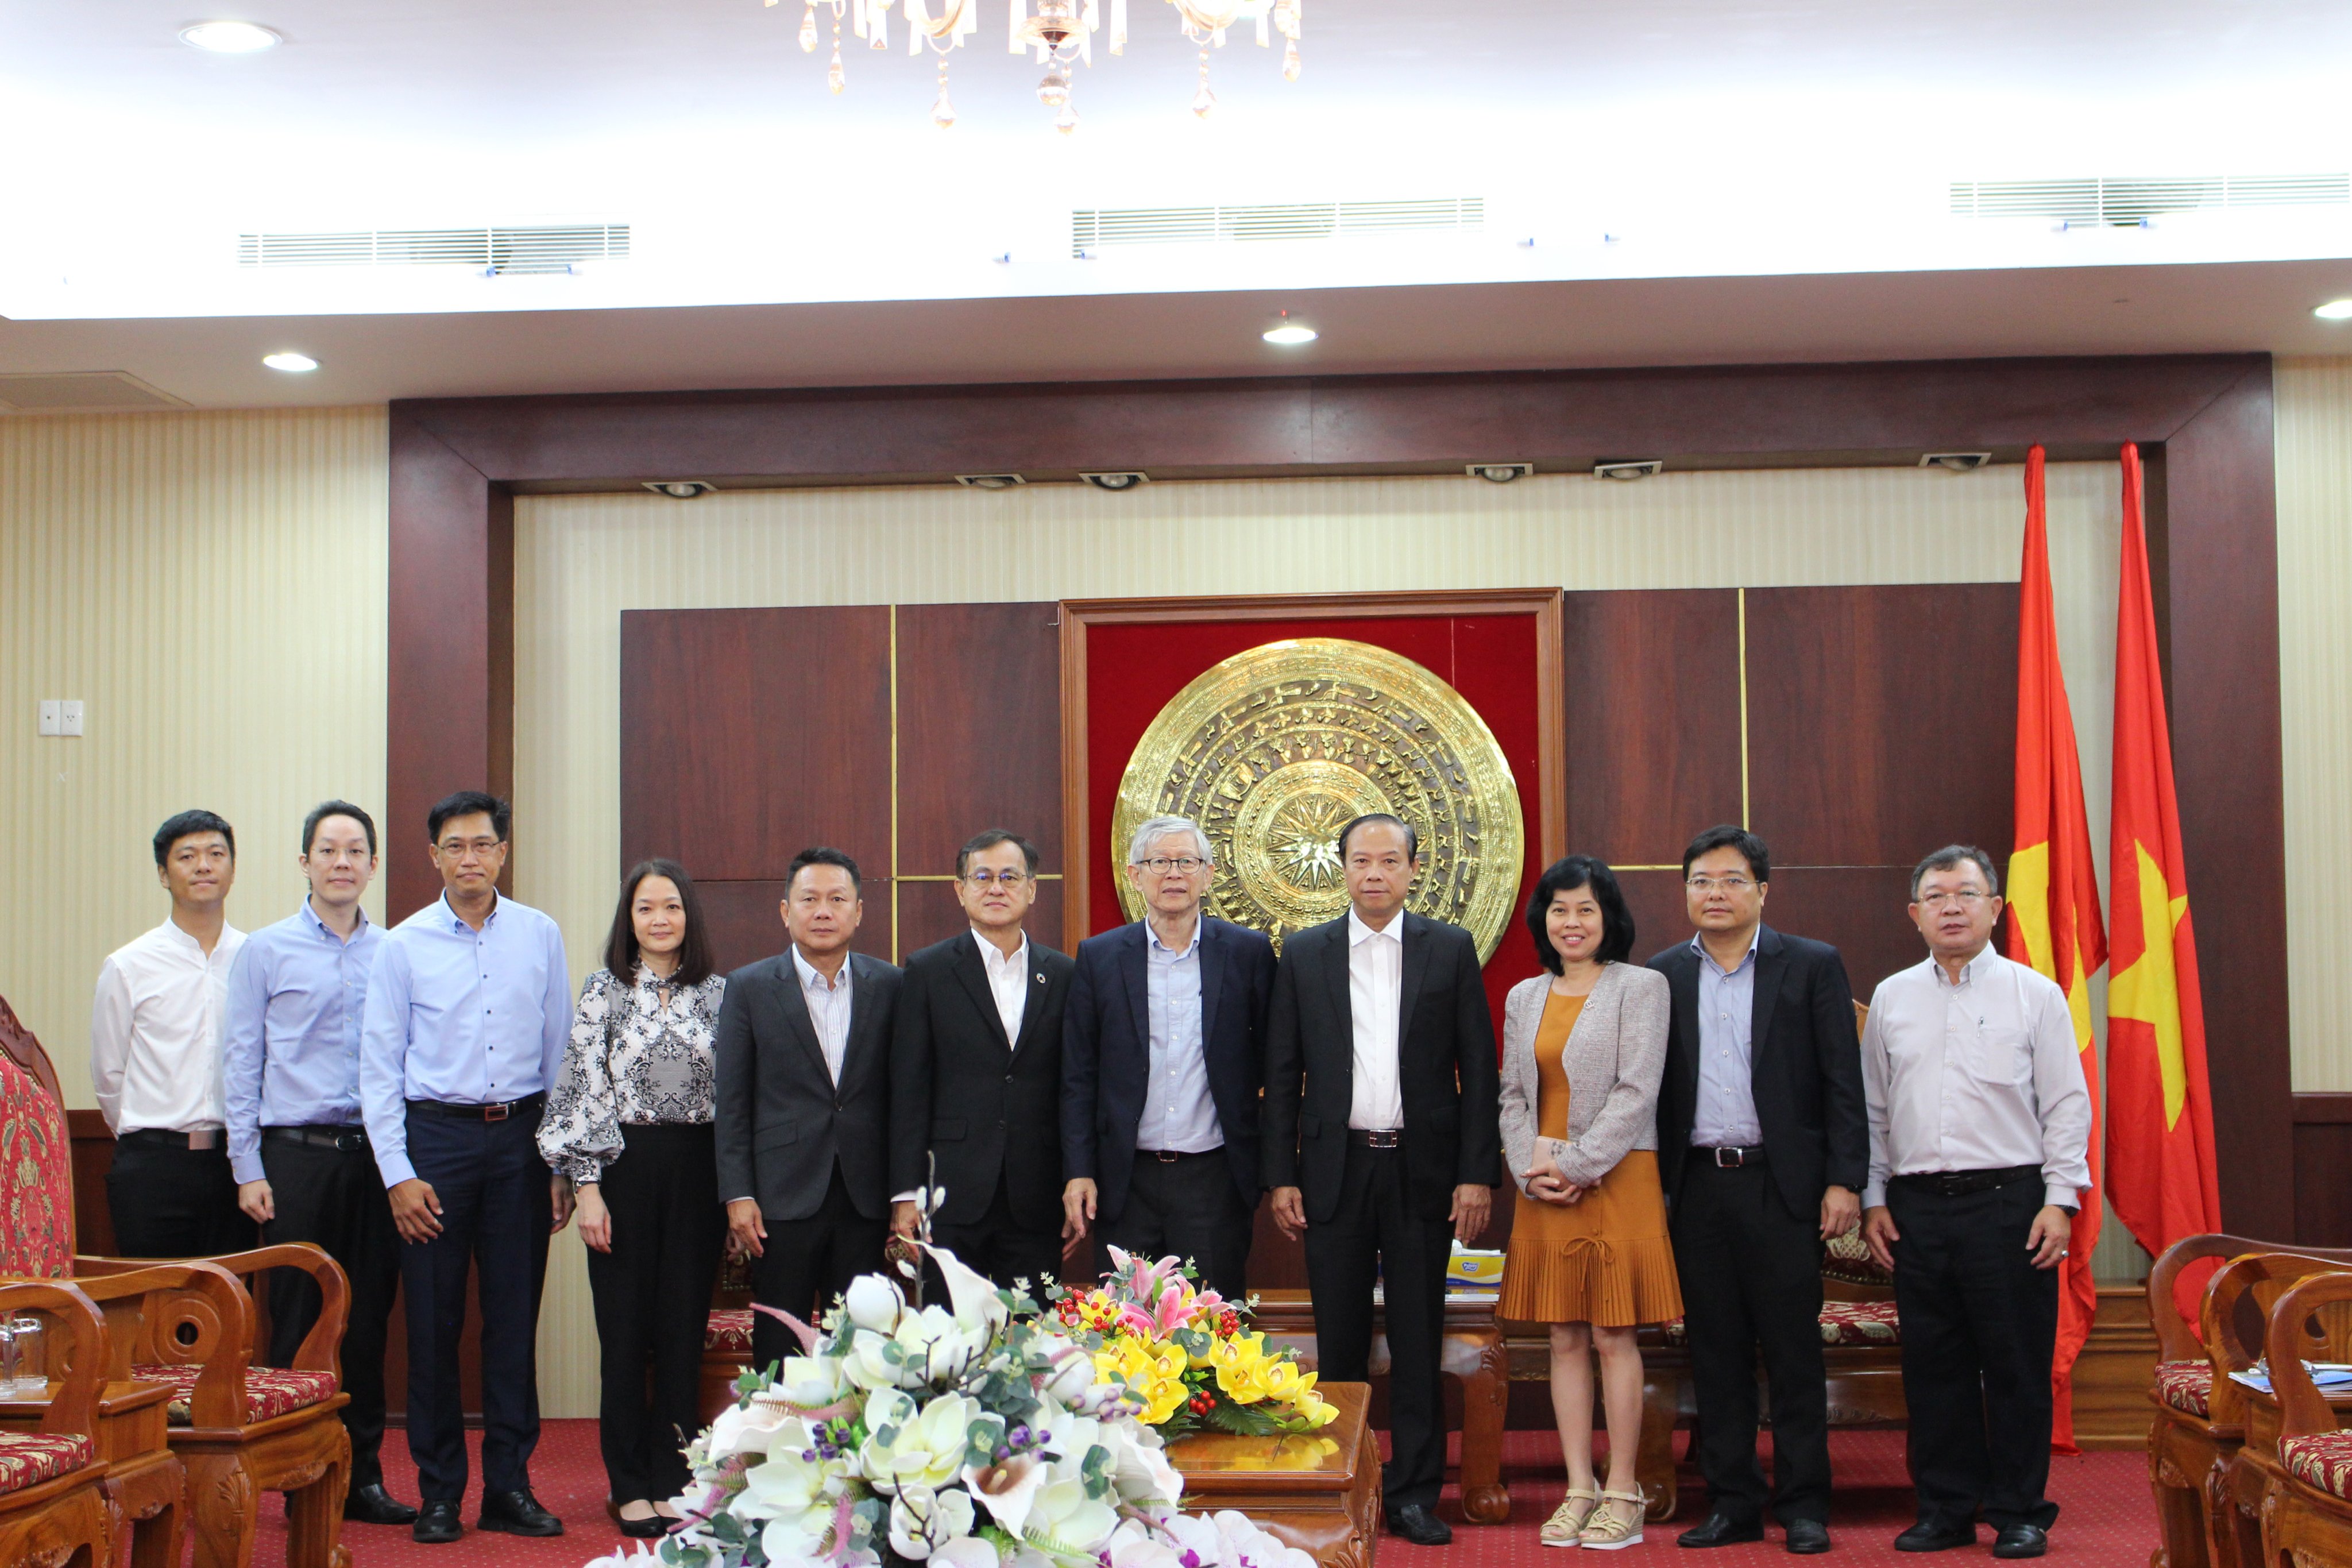 Chủ tịch UBND tỉnh Nguyễn Văn Thọ và đại diện các sở, ngành chụp hình lưu niệm với lãnh đạo tập đoàn SCG.